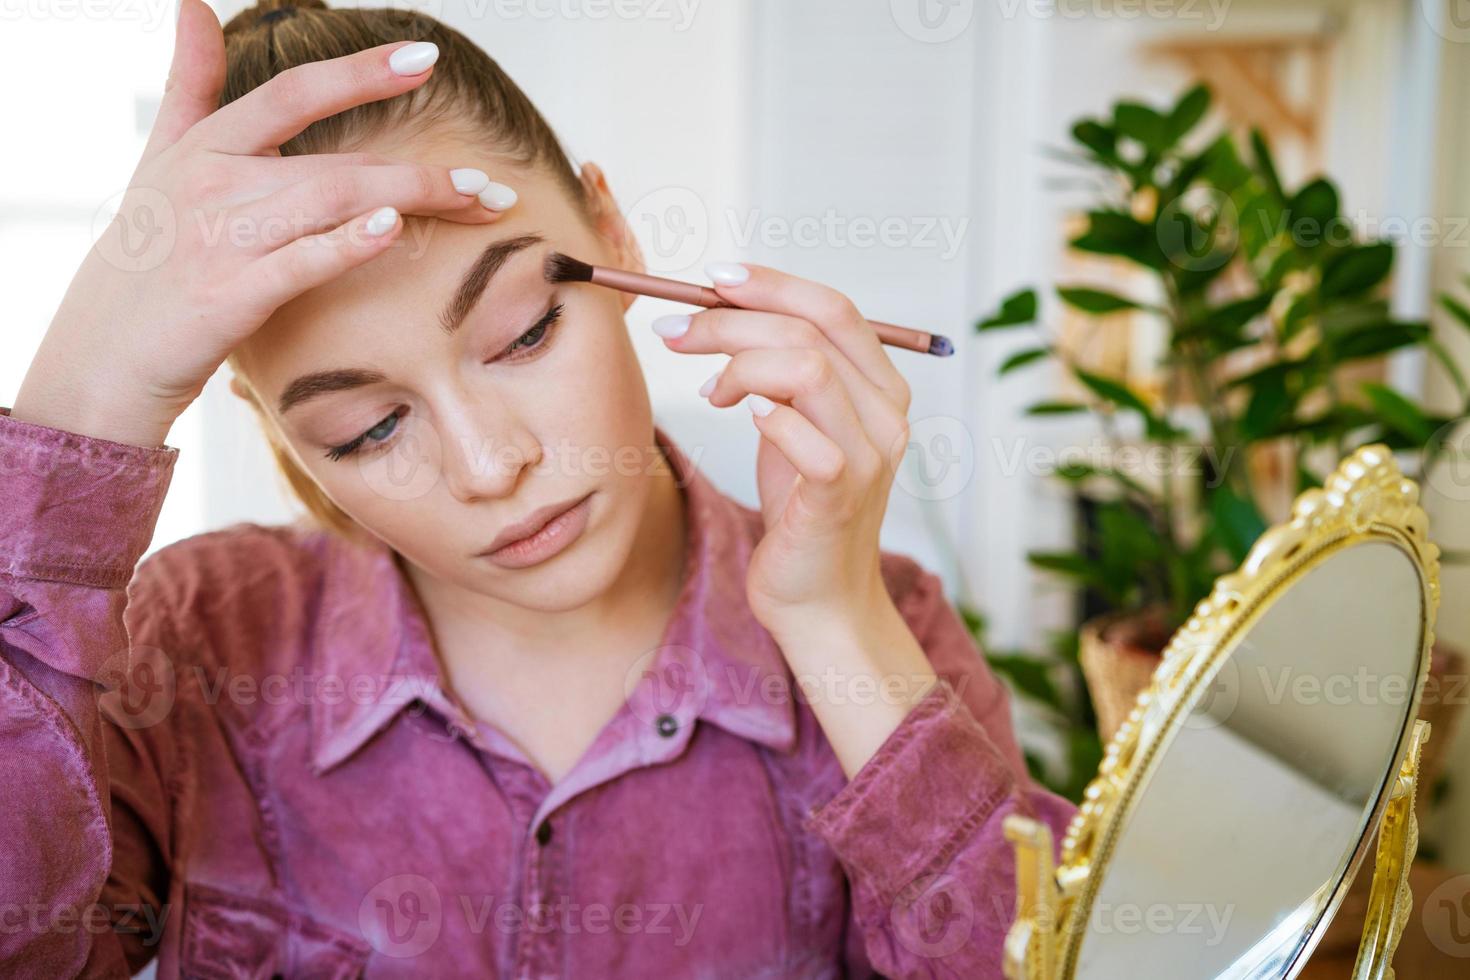 maquillaje en casa. mujer hermosa joven con pincel de maquillaje aplica sombra de ojos foto